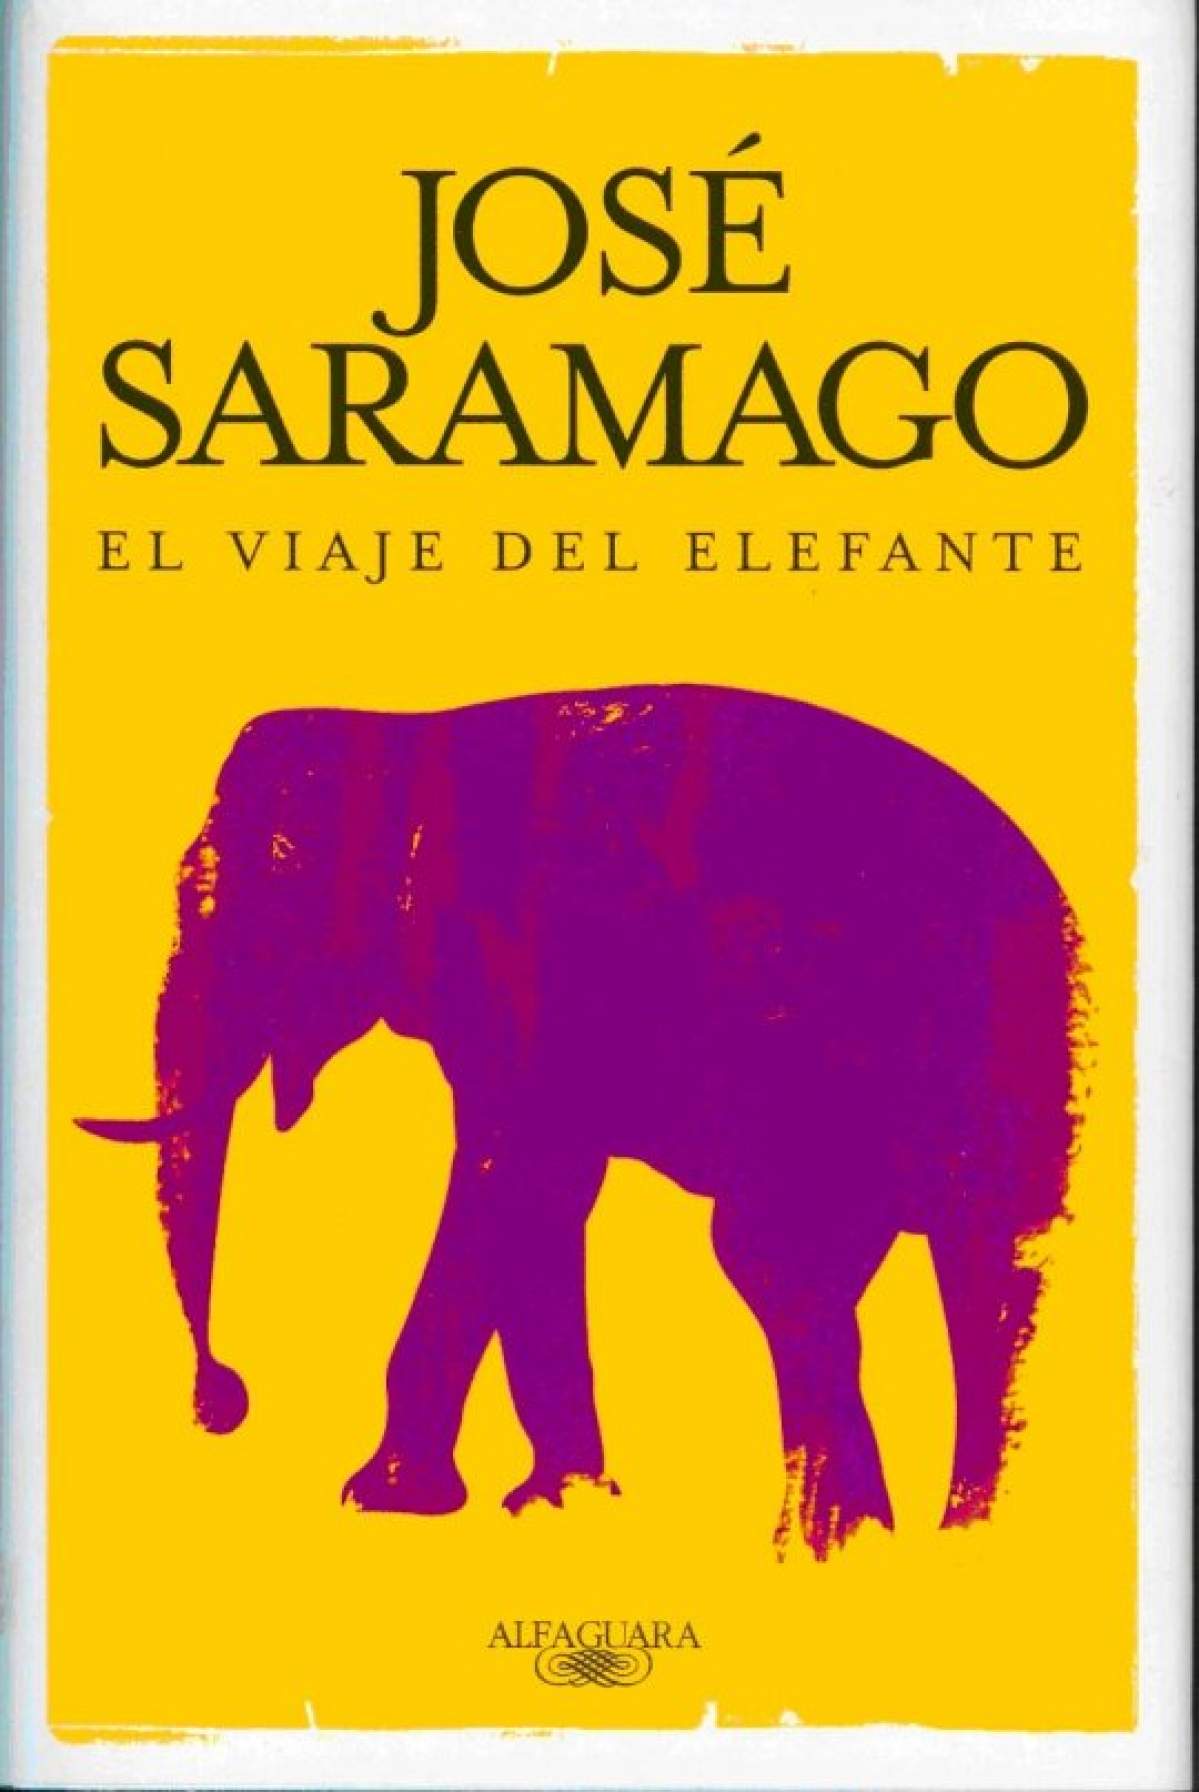 El viaje del elefante de Jose Saramago